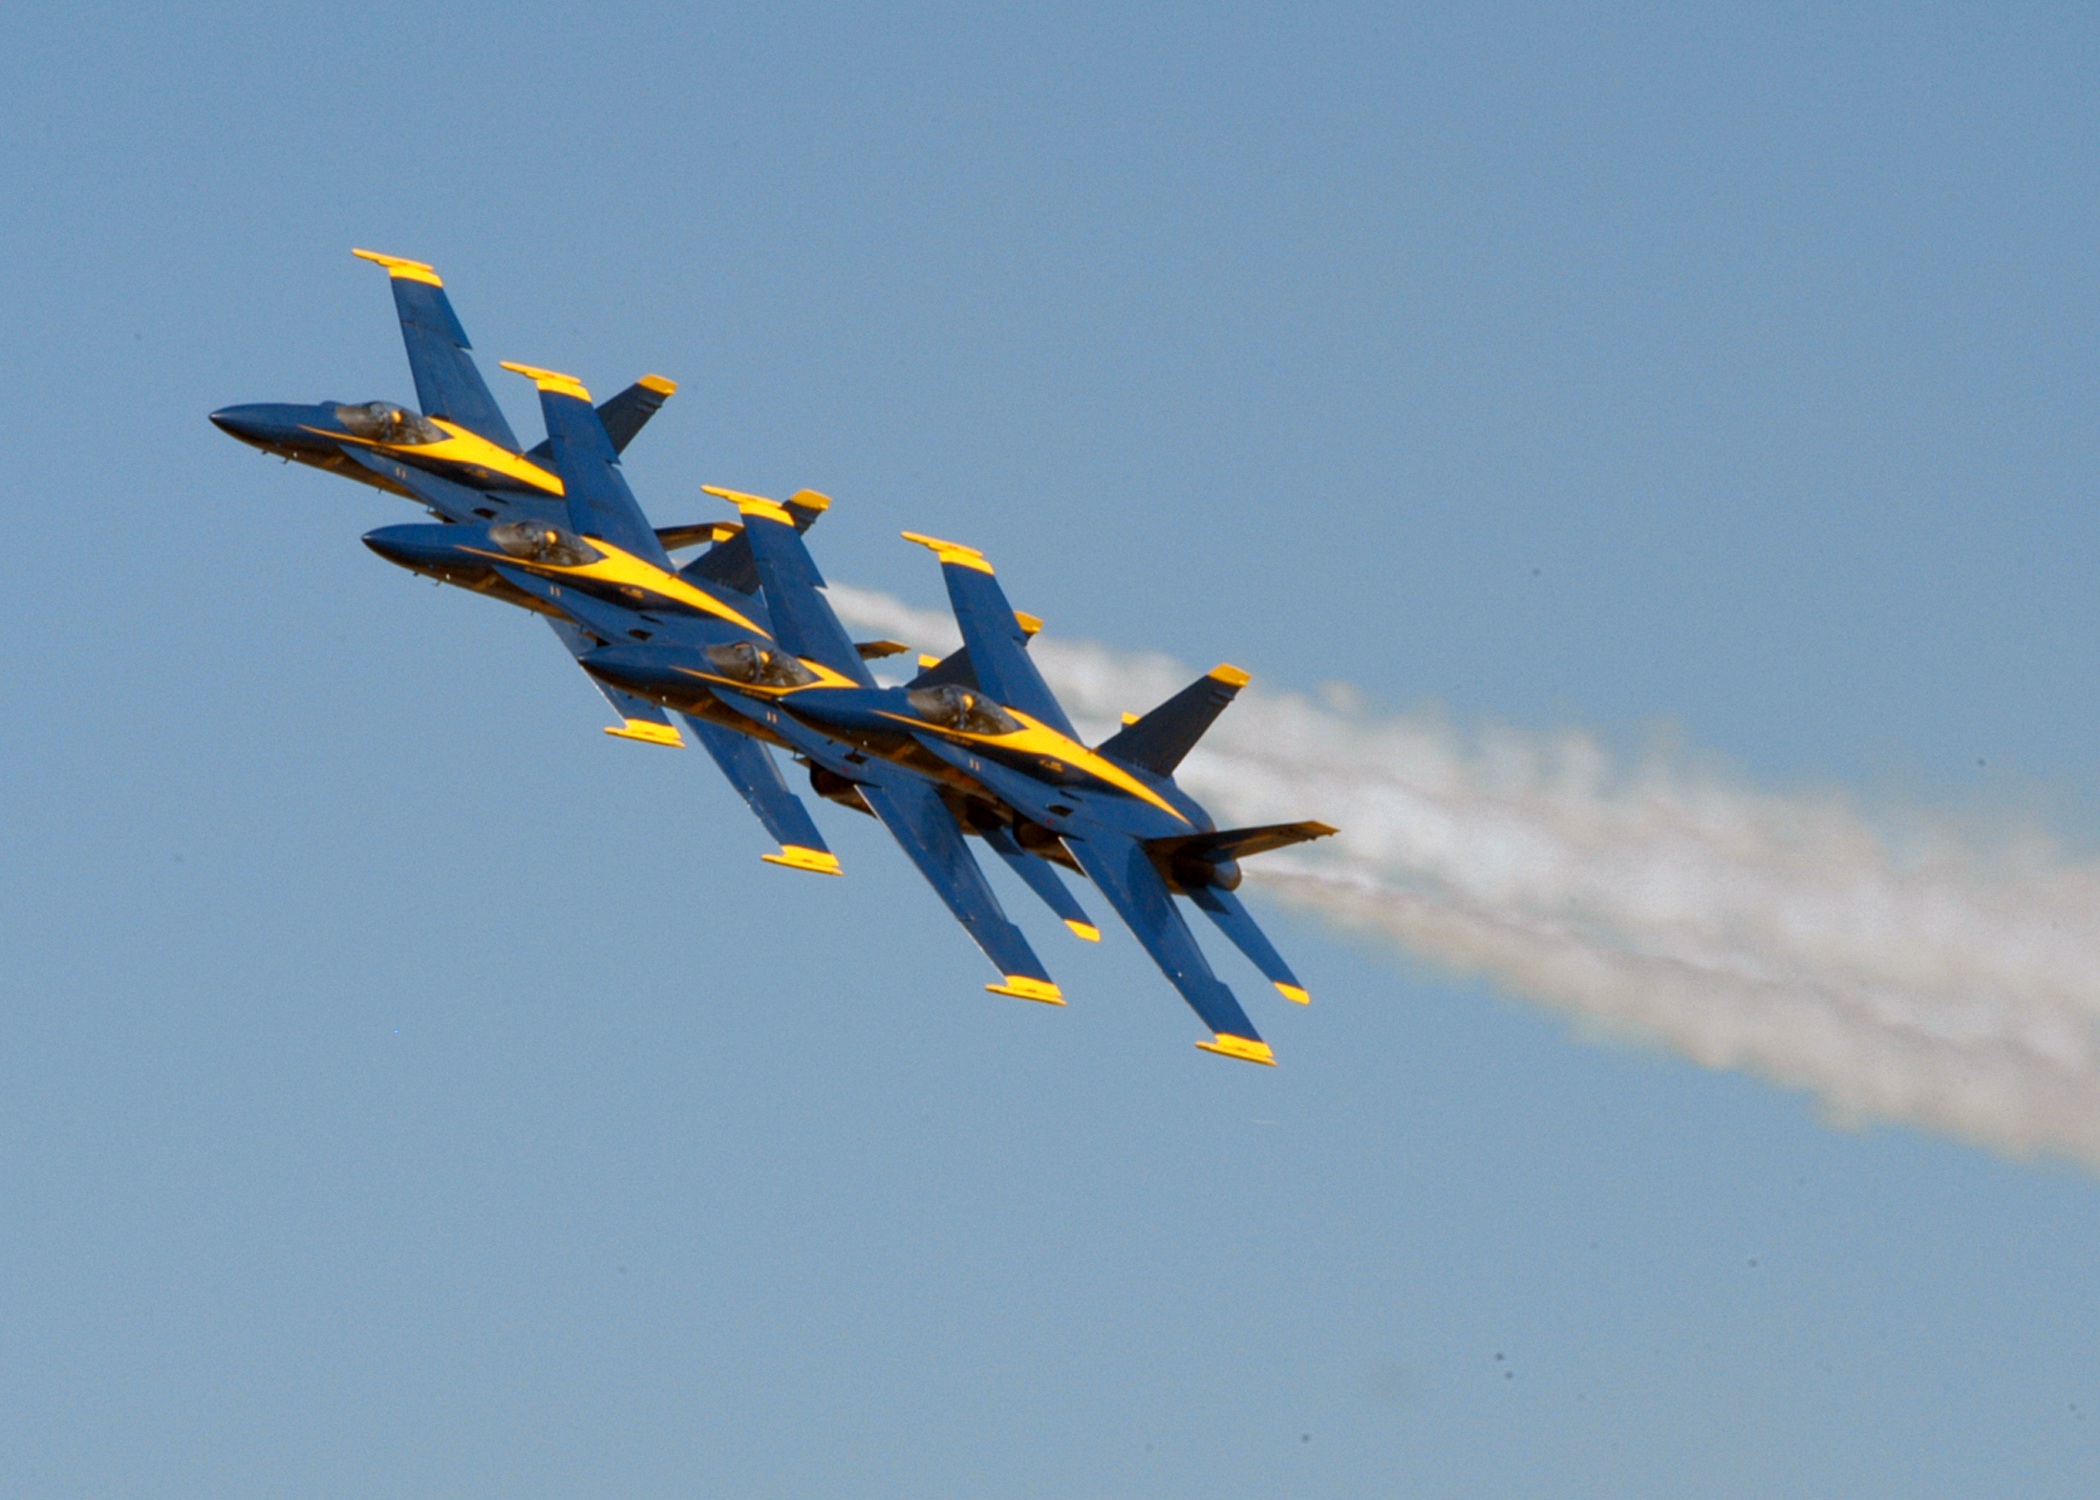 US Navy Airshow, Air, Aircraft, Airshow, Flying, HQ Photo